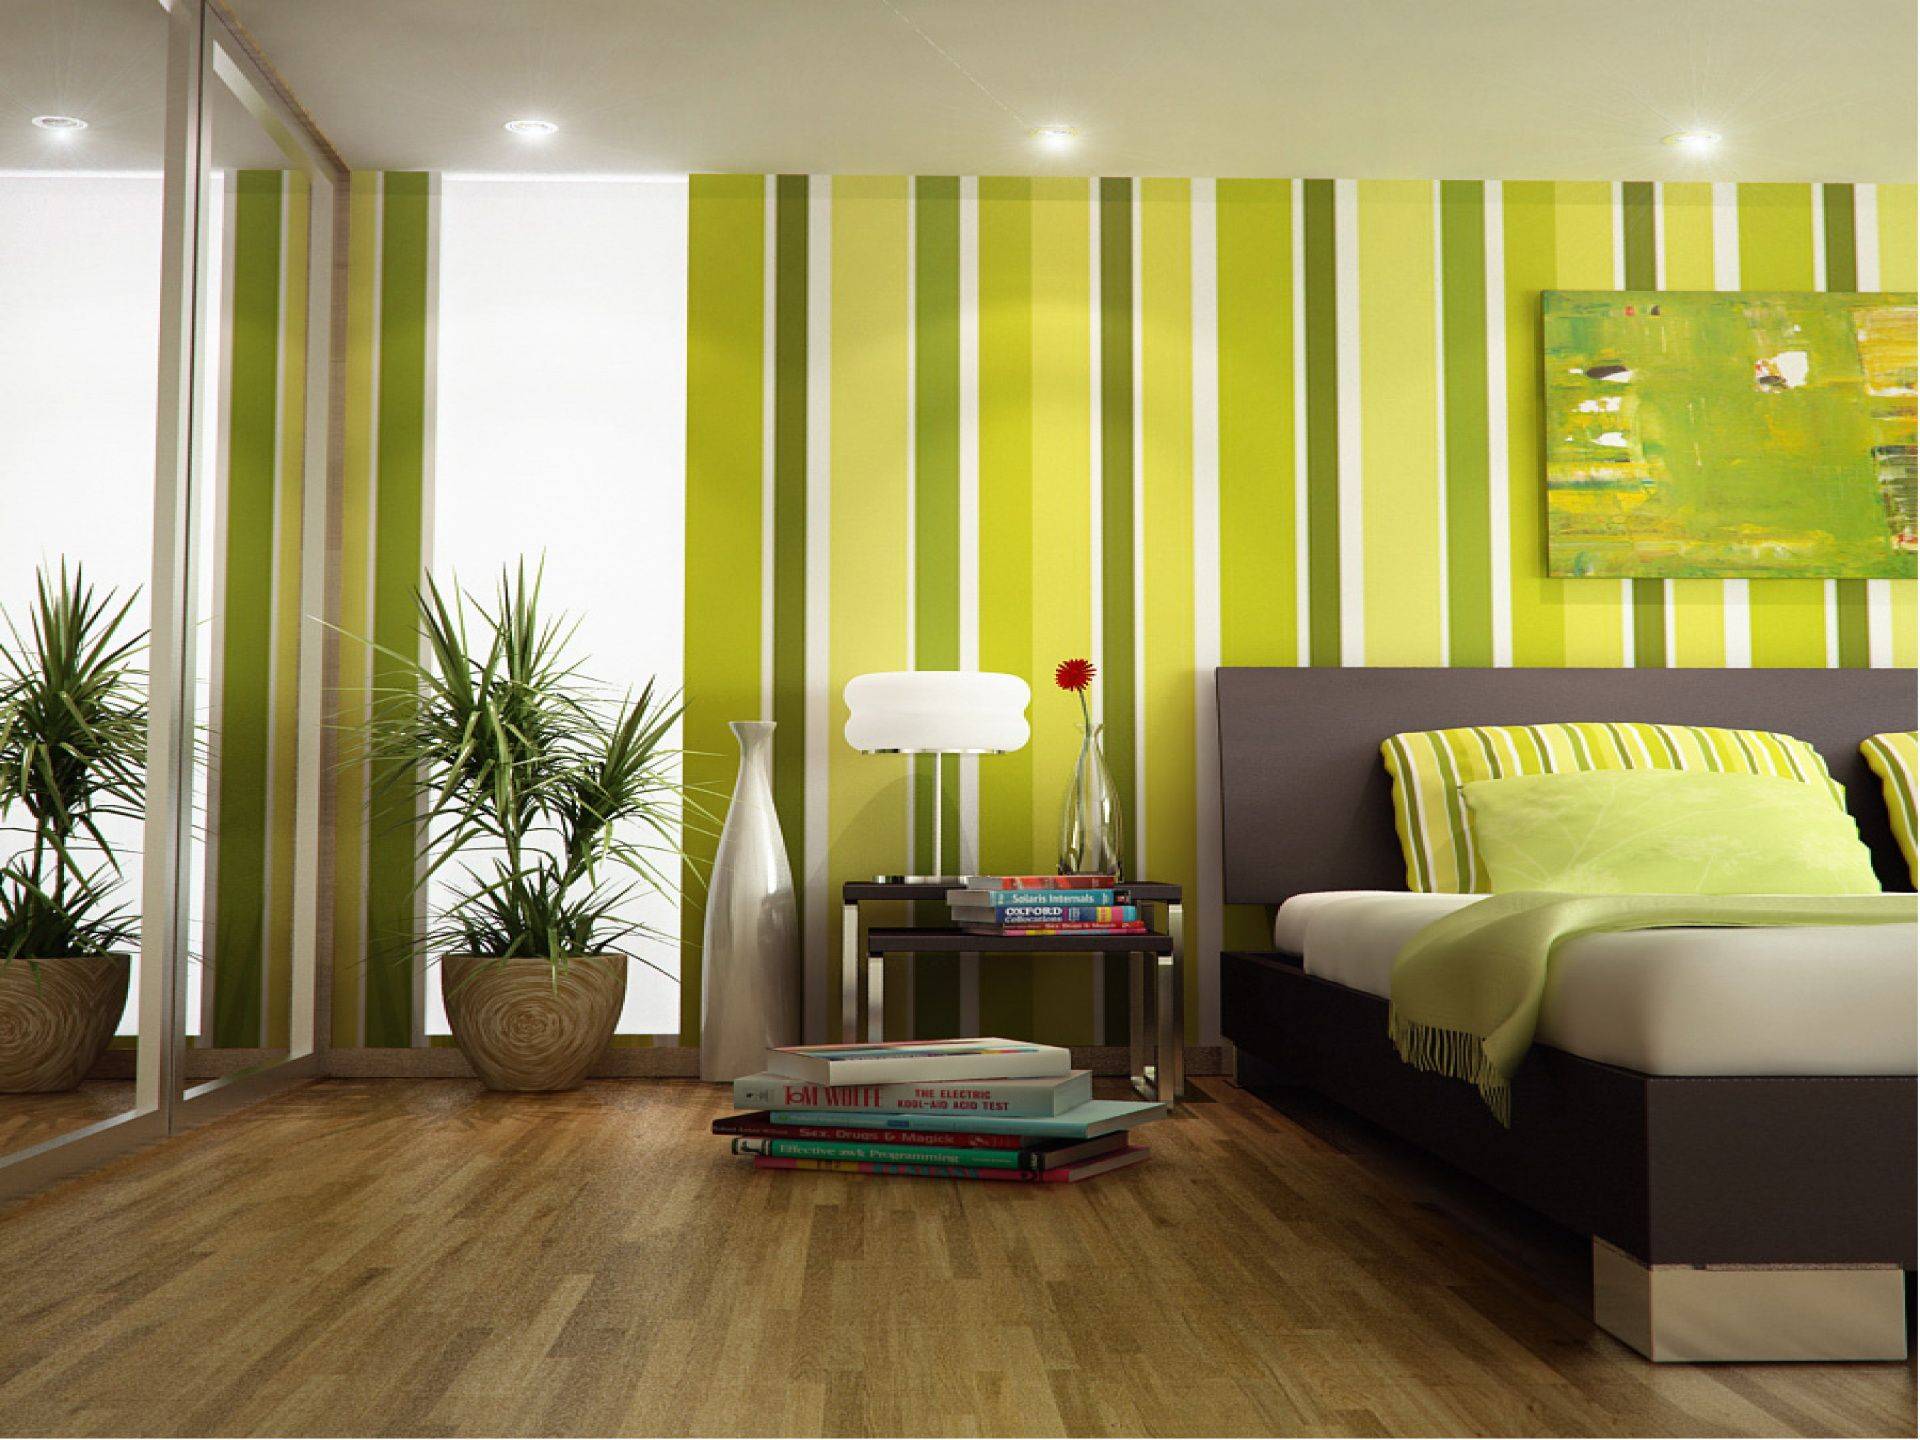 Стоит ли использовать зеленые обои в интерьере: спальне, кухне, гостинной- обзор +видео